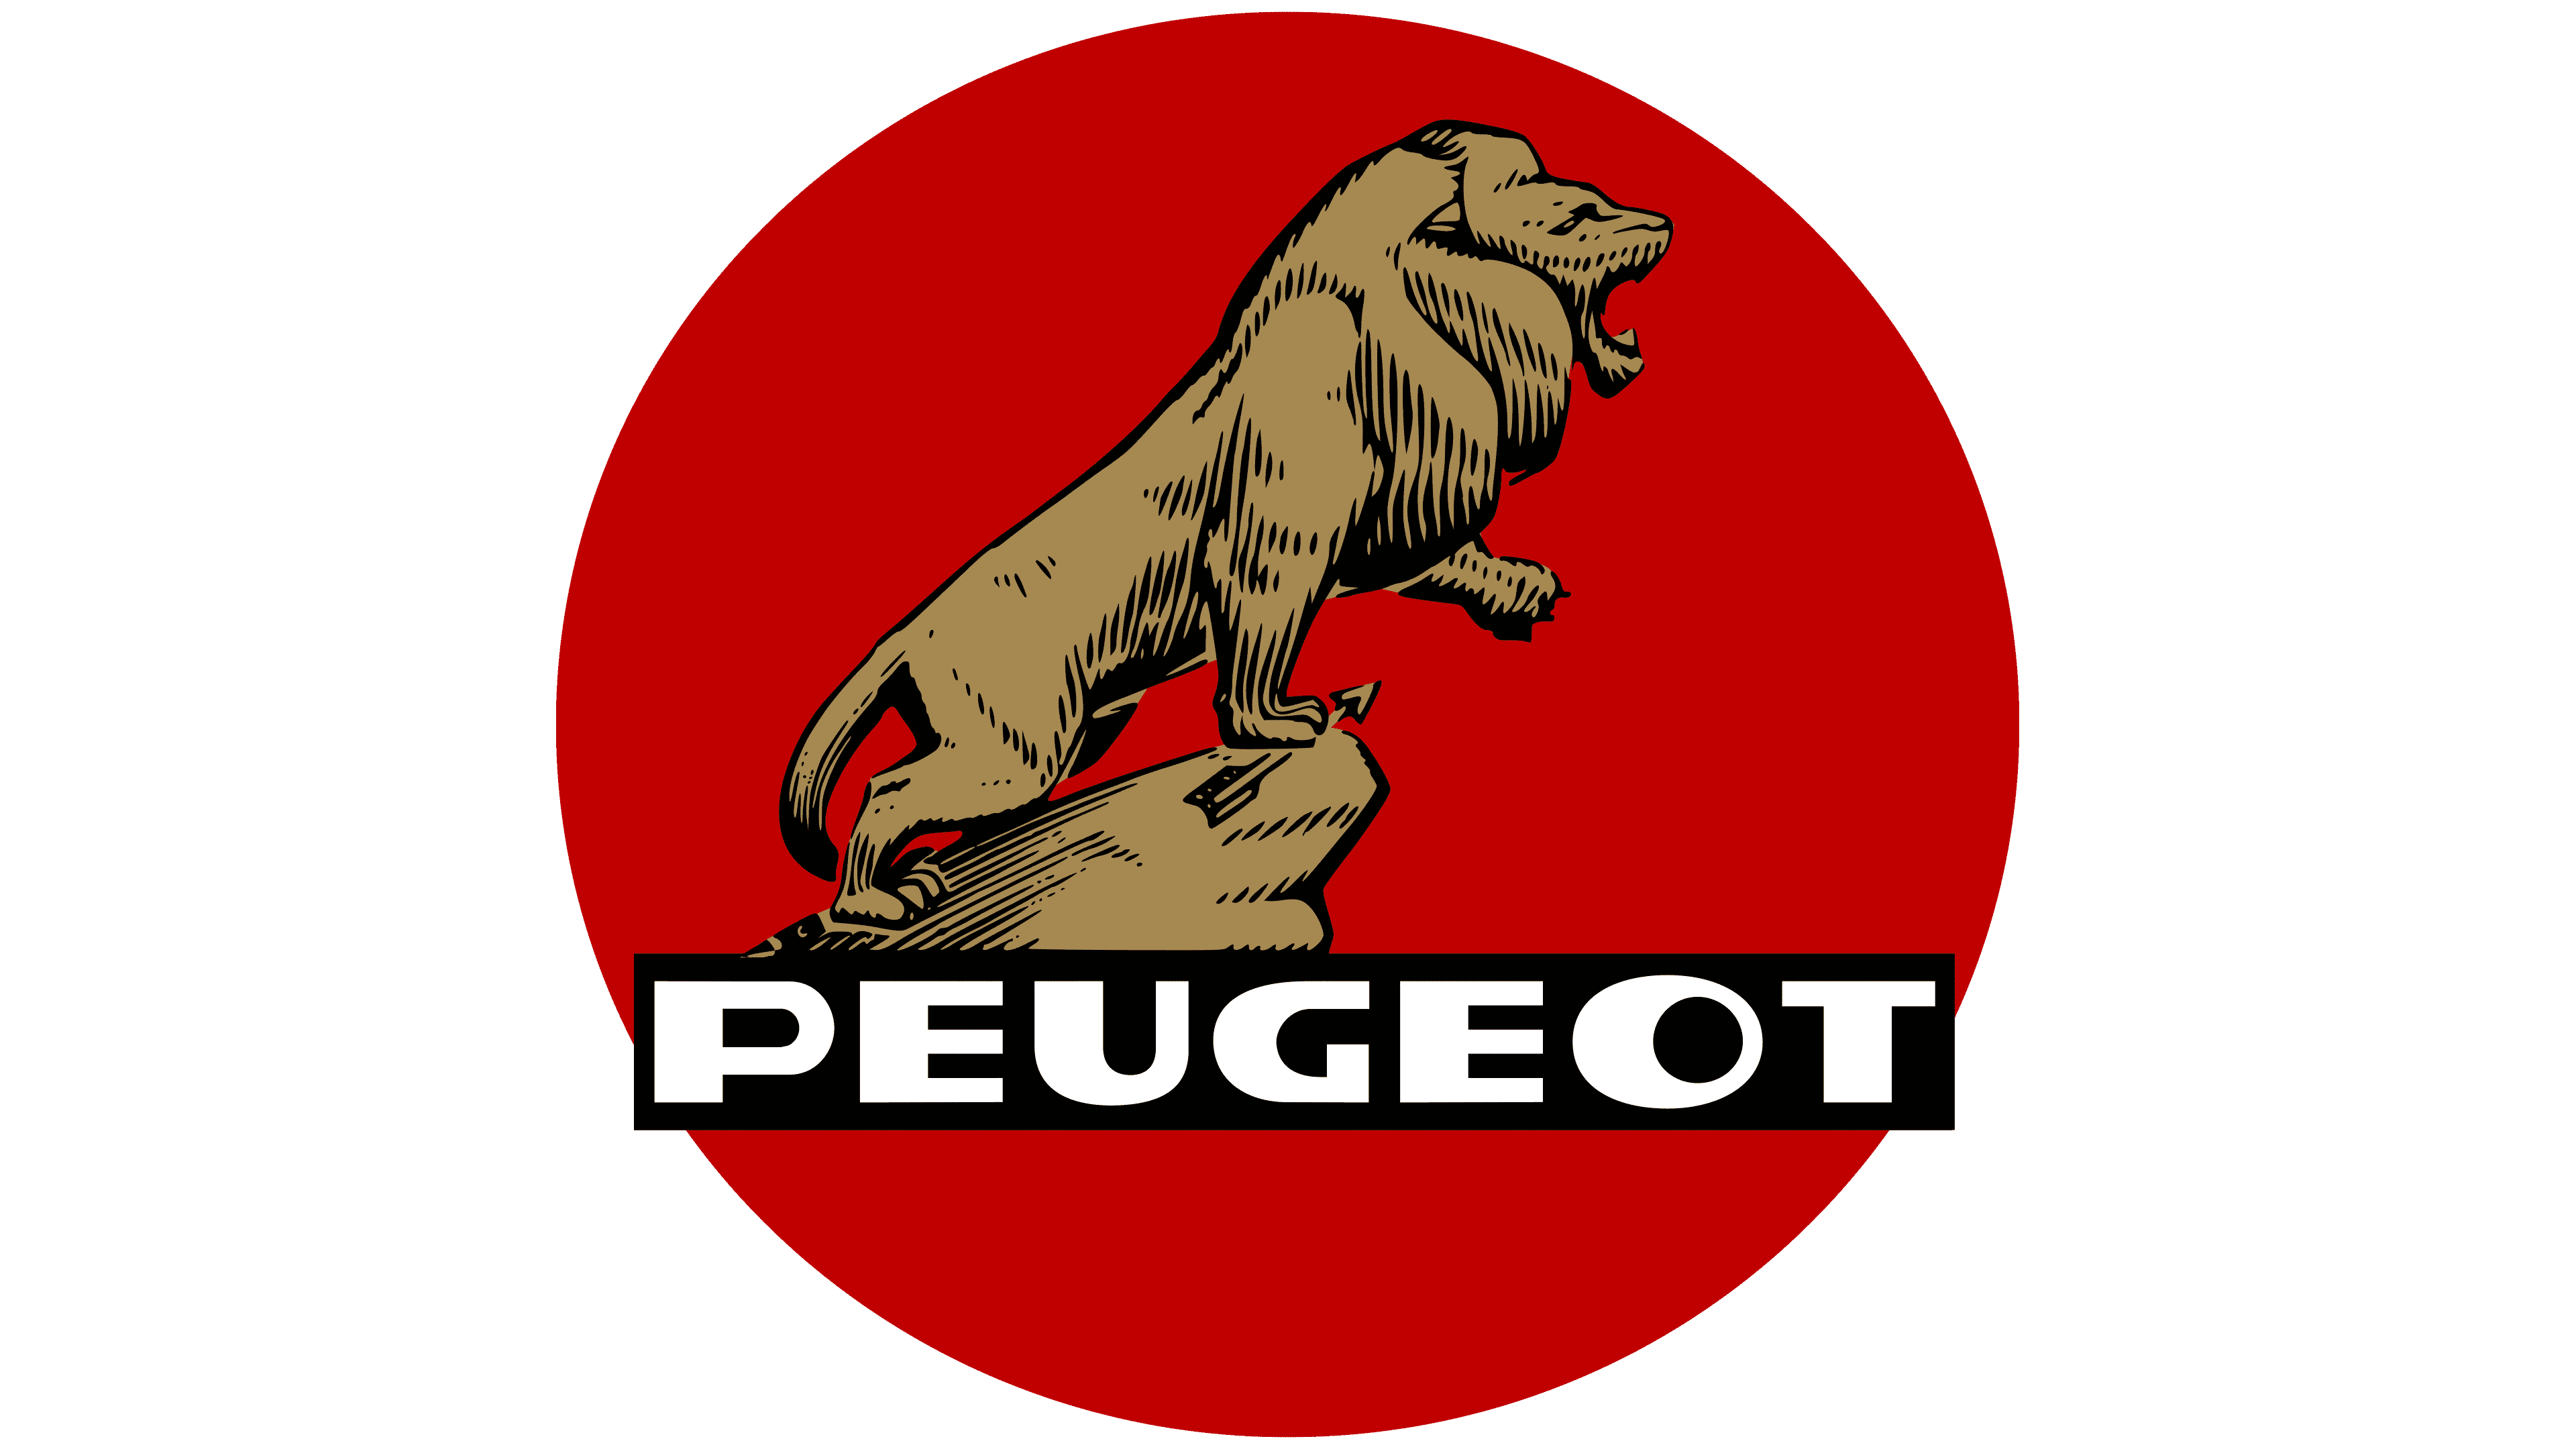 Welche Bedeutung hat der Peugeot-Löwe?